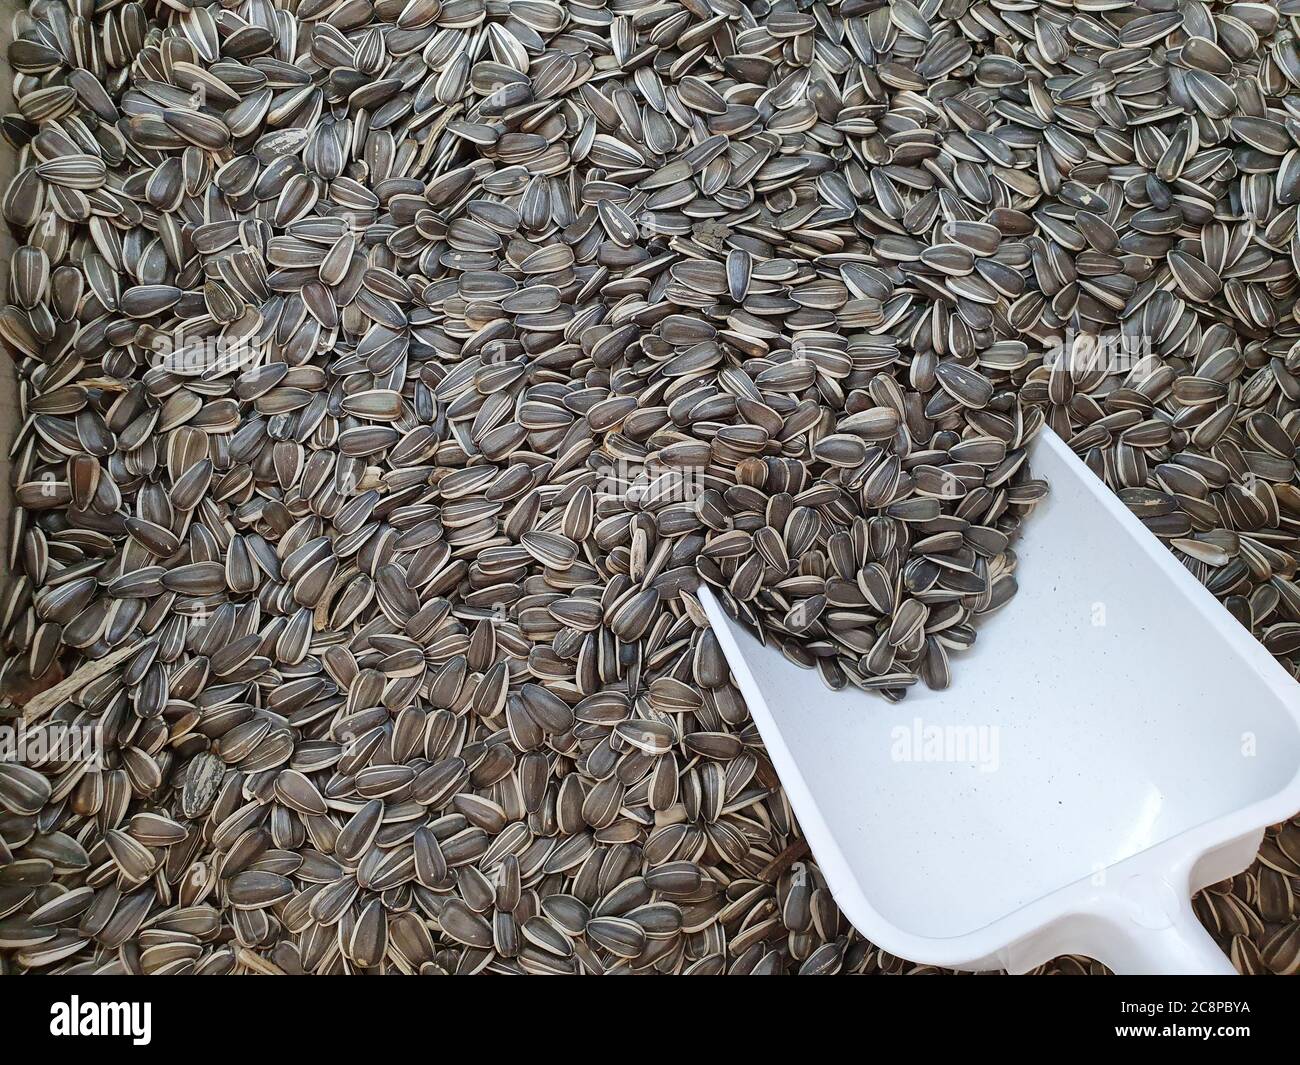 Un sacco di semi di girasole. Grano in grandi quantità per consumo umano. Foto Stock